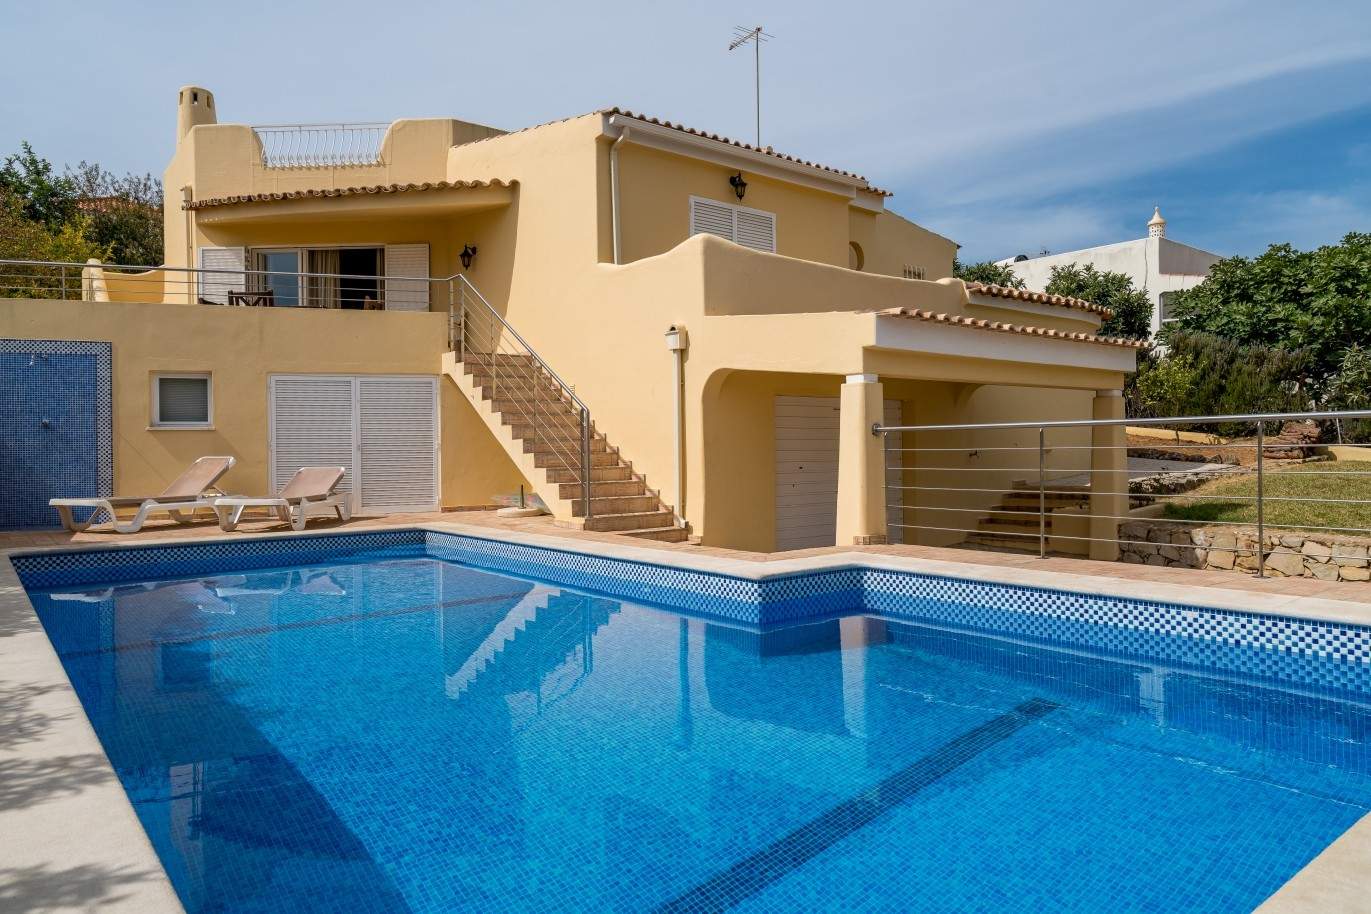 Moradia para venda, com piscina, perto da praia, Albufeira, Algarve_68458